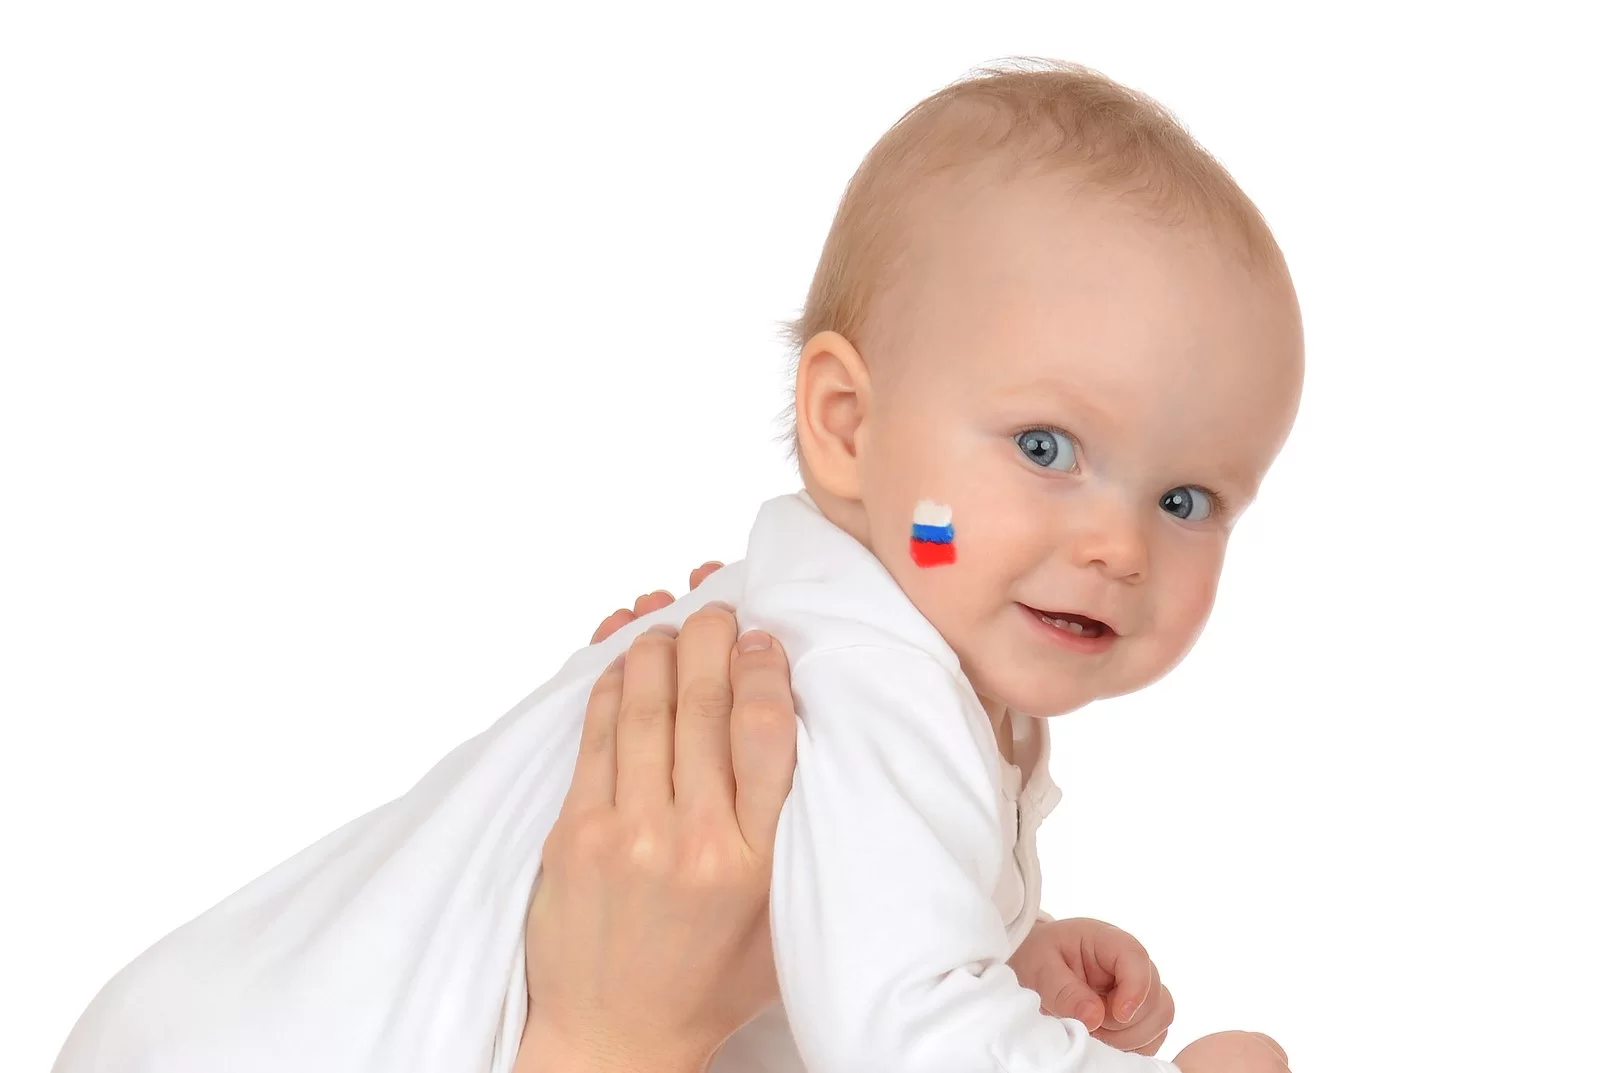 Após legalizar aborto, Rússia retrocede e proíbe prática em todo seu território